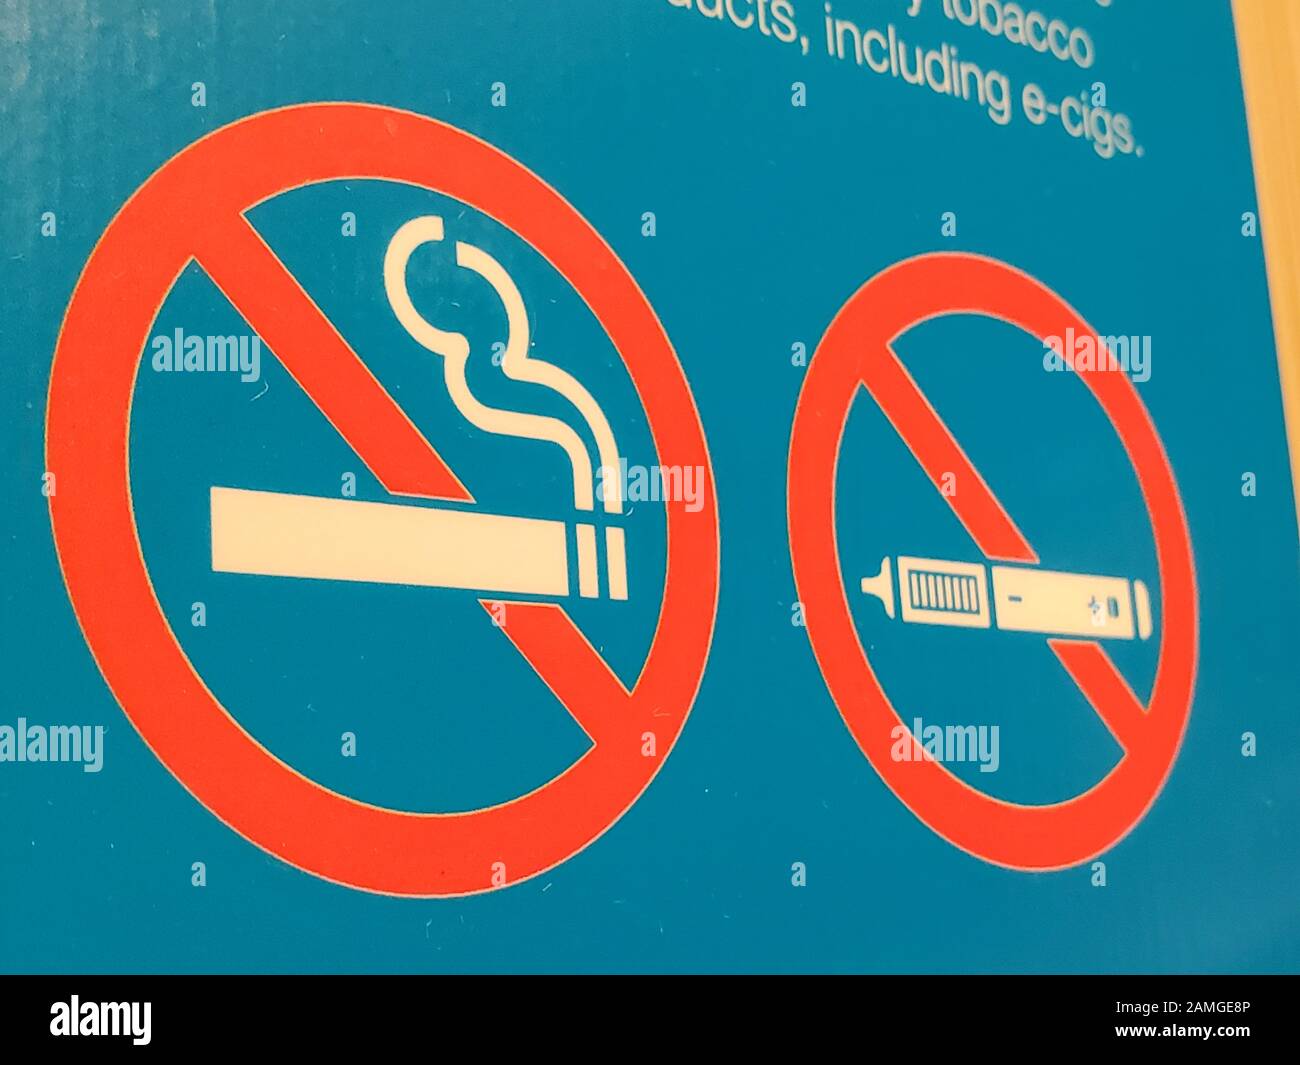 Nahaufnahme eines kombinierten Zeichens für Nichtraucher und No-Vaping, San Francisco, Kalifornien, 16. Oktober 2019. Viele öffentliche Institutionen haben E-Zigaretten und Vaping verboten, und zwar nach denselben Richtlinien, die auch zum Verbot anderer Formen des Rauchens verwendet werden. () Stockfoto